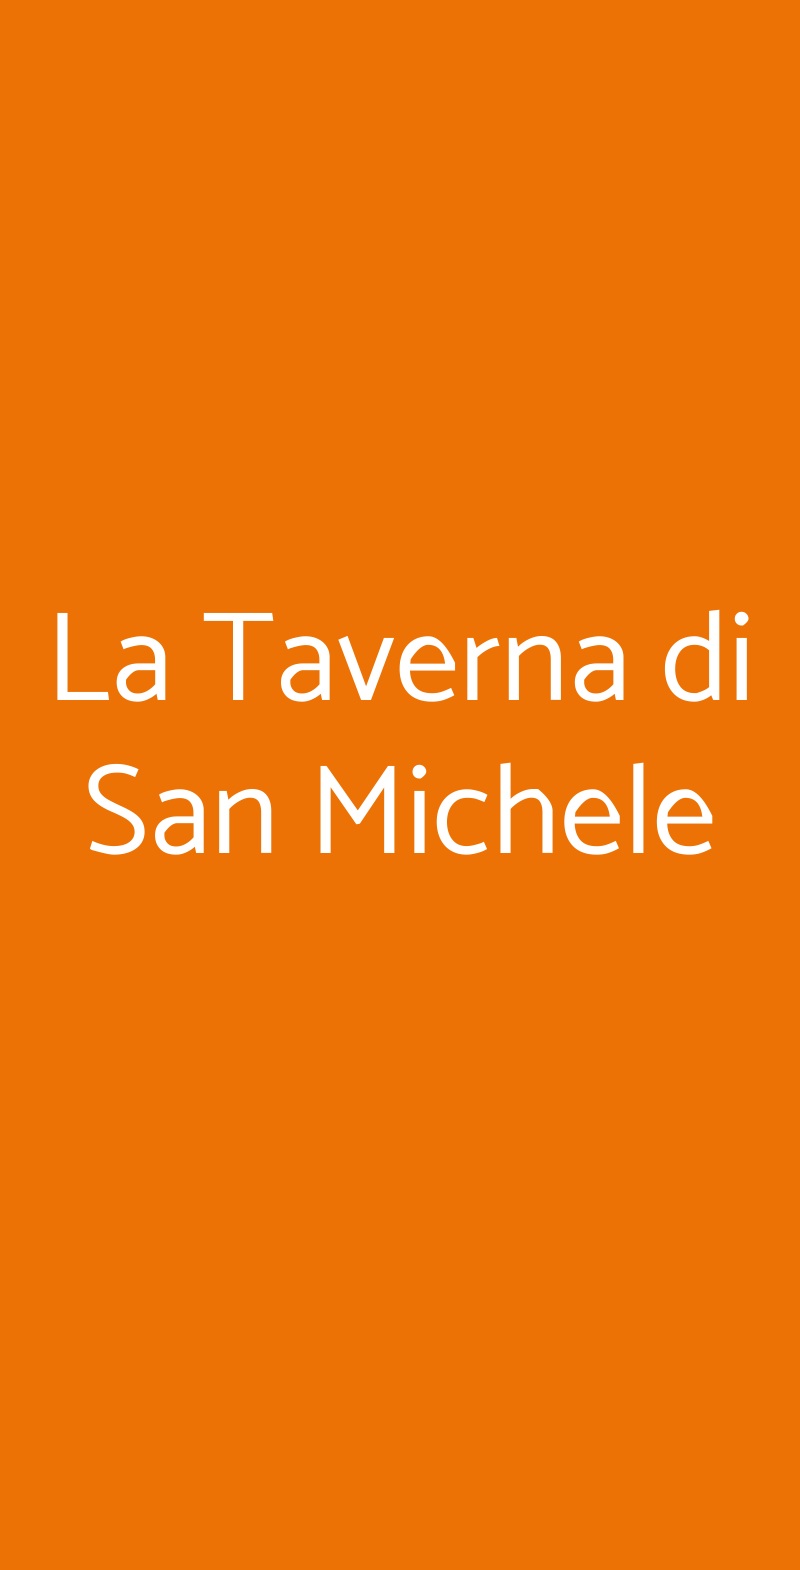 La Taverna di San Michele Dusino San Michele menù 1 pagina